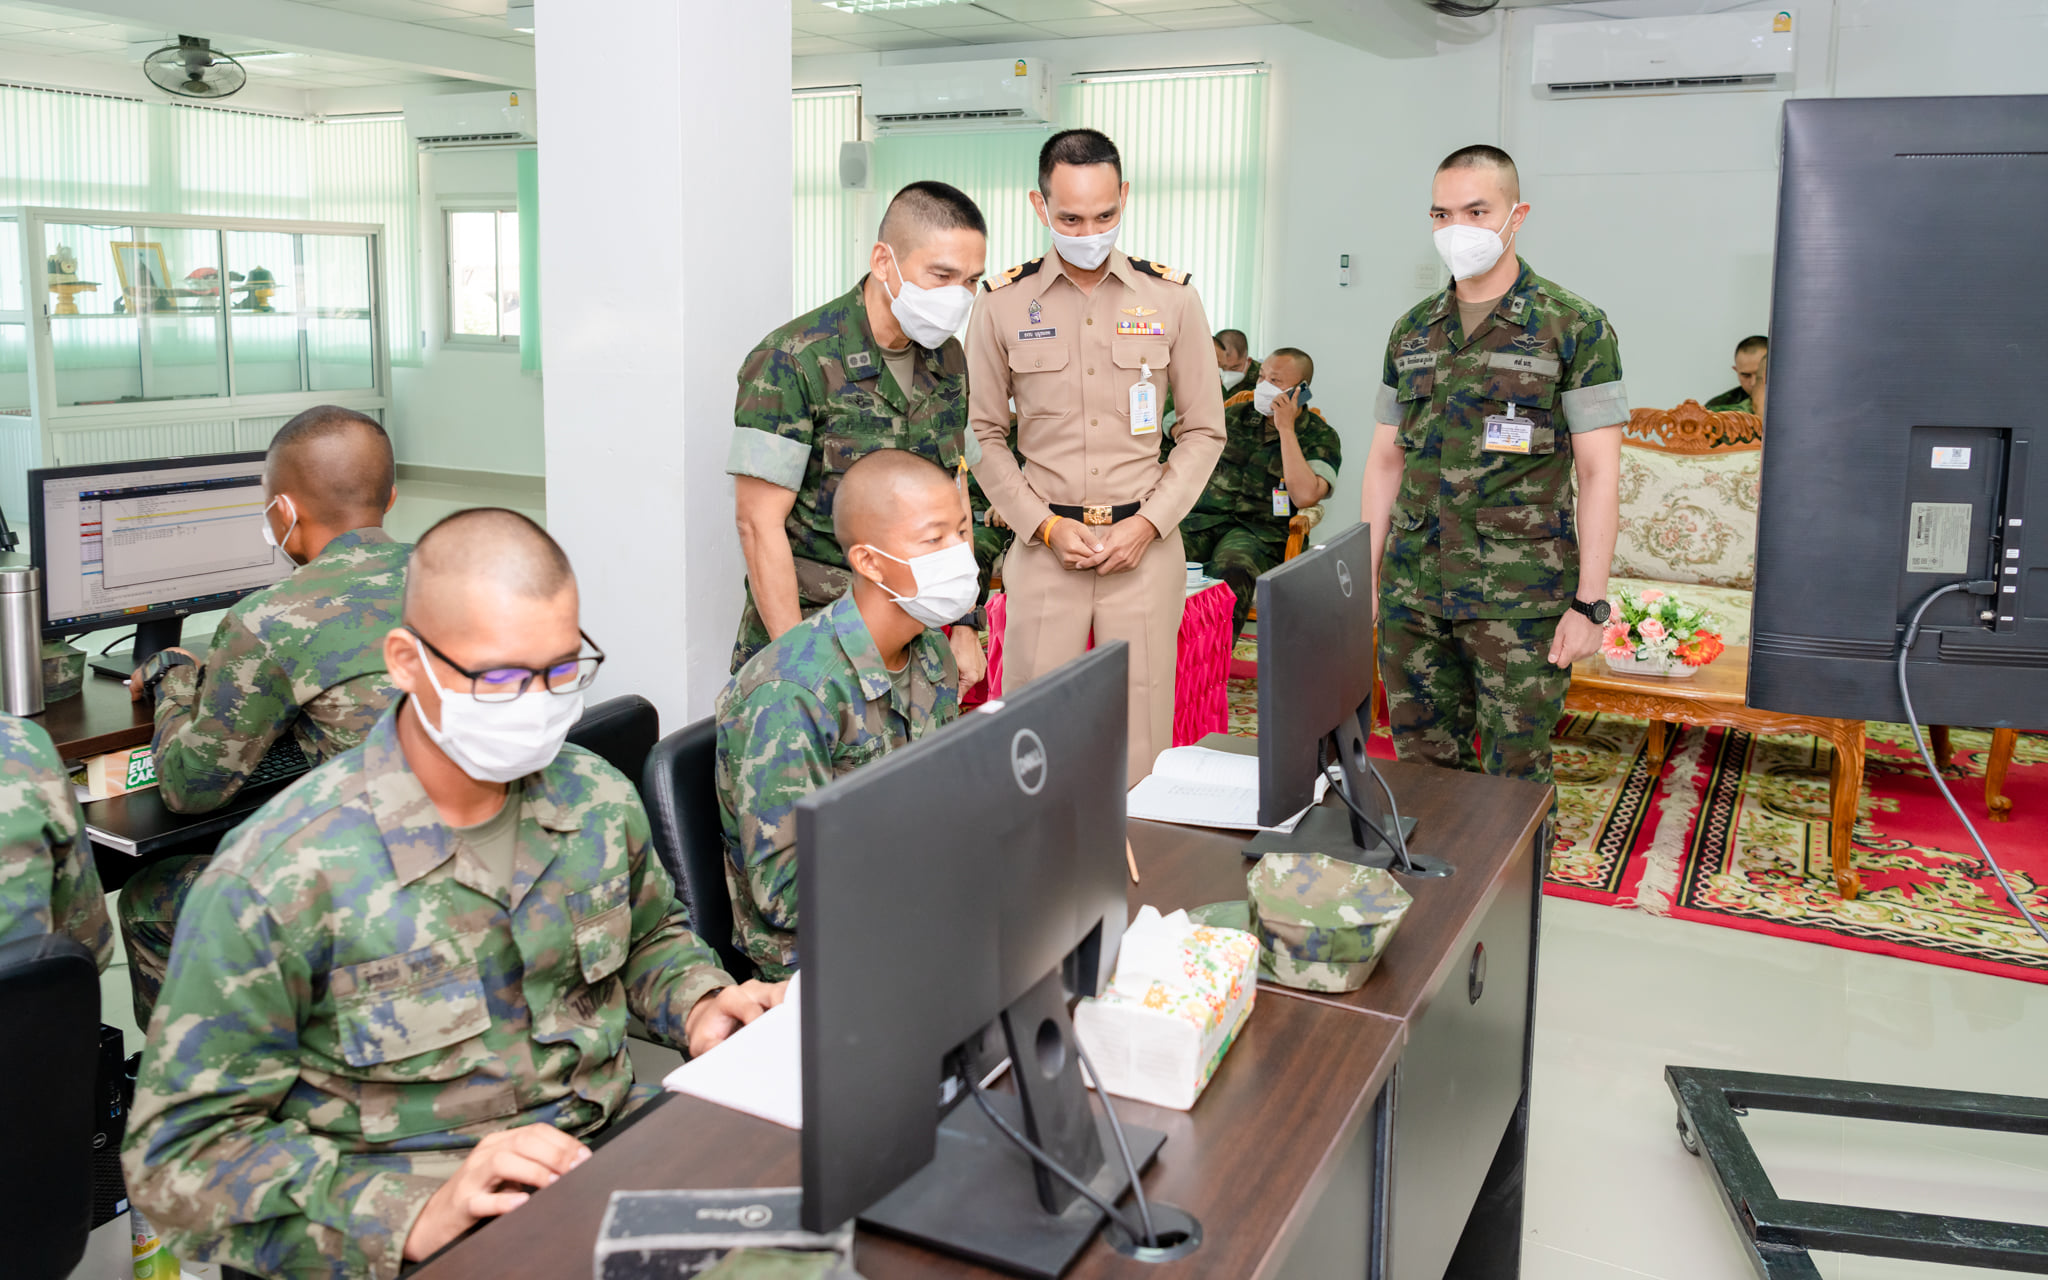  รองผู้บัญชาการหน่วยบัญชาการนาวิกโยธิน เยี่ยมชมนักเรียนจ่านาวิกโยธินในการแข่งขันทักษะทางไซเบอร์ในระดับโรงเรียนทหาร - ตำรวจ กองบัญชาการกองทัพไทย ประจำปี ๒๕๖๔